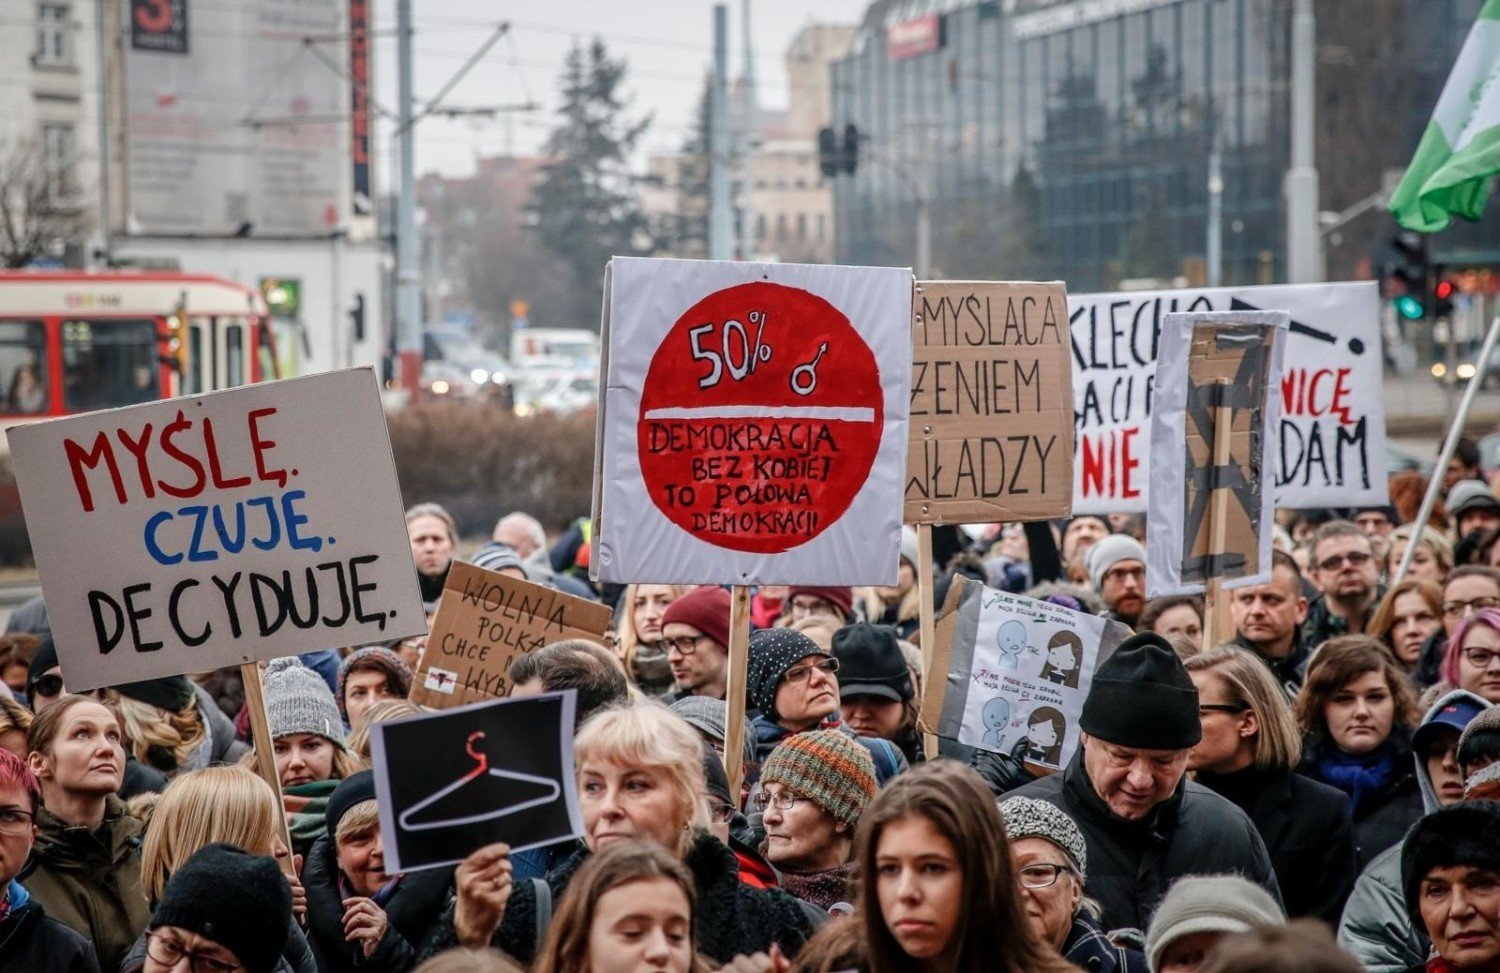 Raport o aborcji w Polsce 2019. Ile aborcji przeprowadzili lekarze w Podlaskiem? Ministerstwo Zdrowia podało dane (ZDJĘCIA)